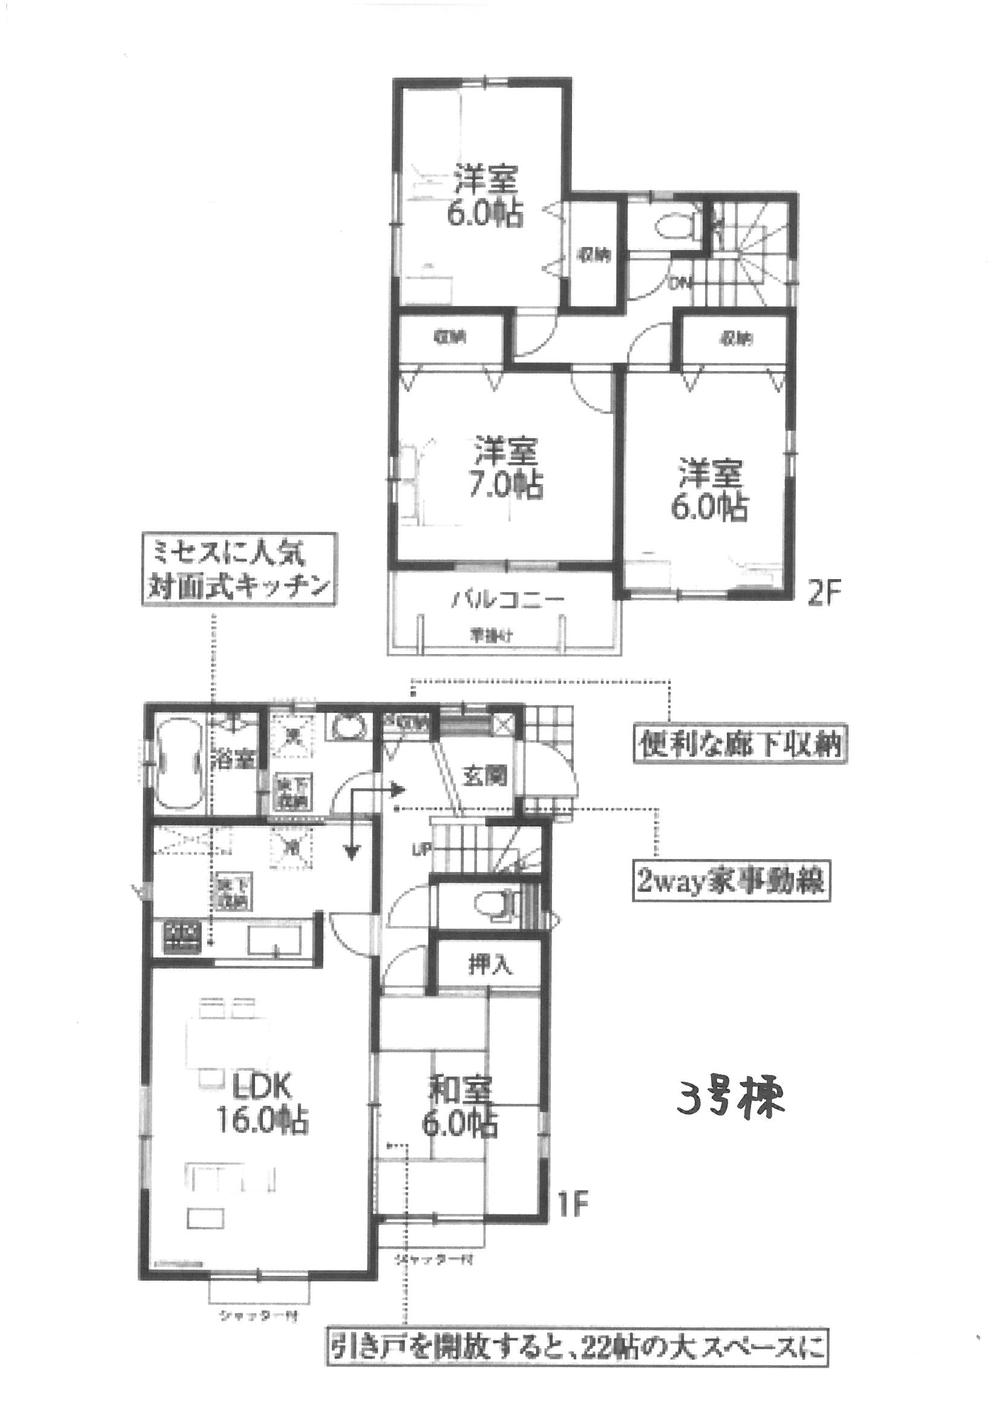 Floor plan. 23,700,000 yen, 4LDK, Land area 197.36 sq m , Building area 98.53 sq m 3 Building plan view